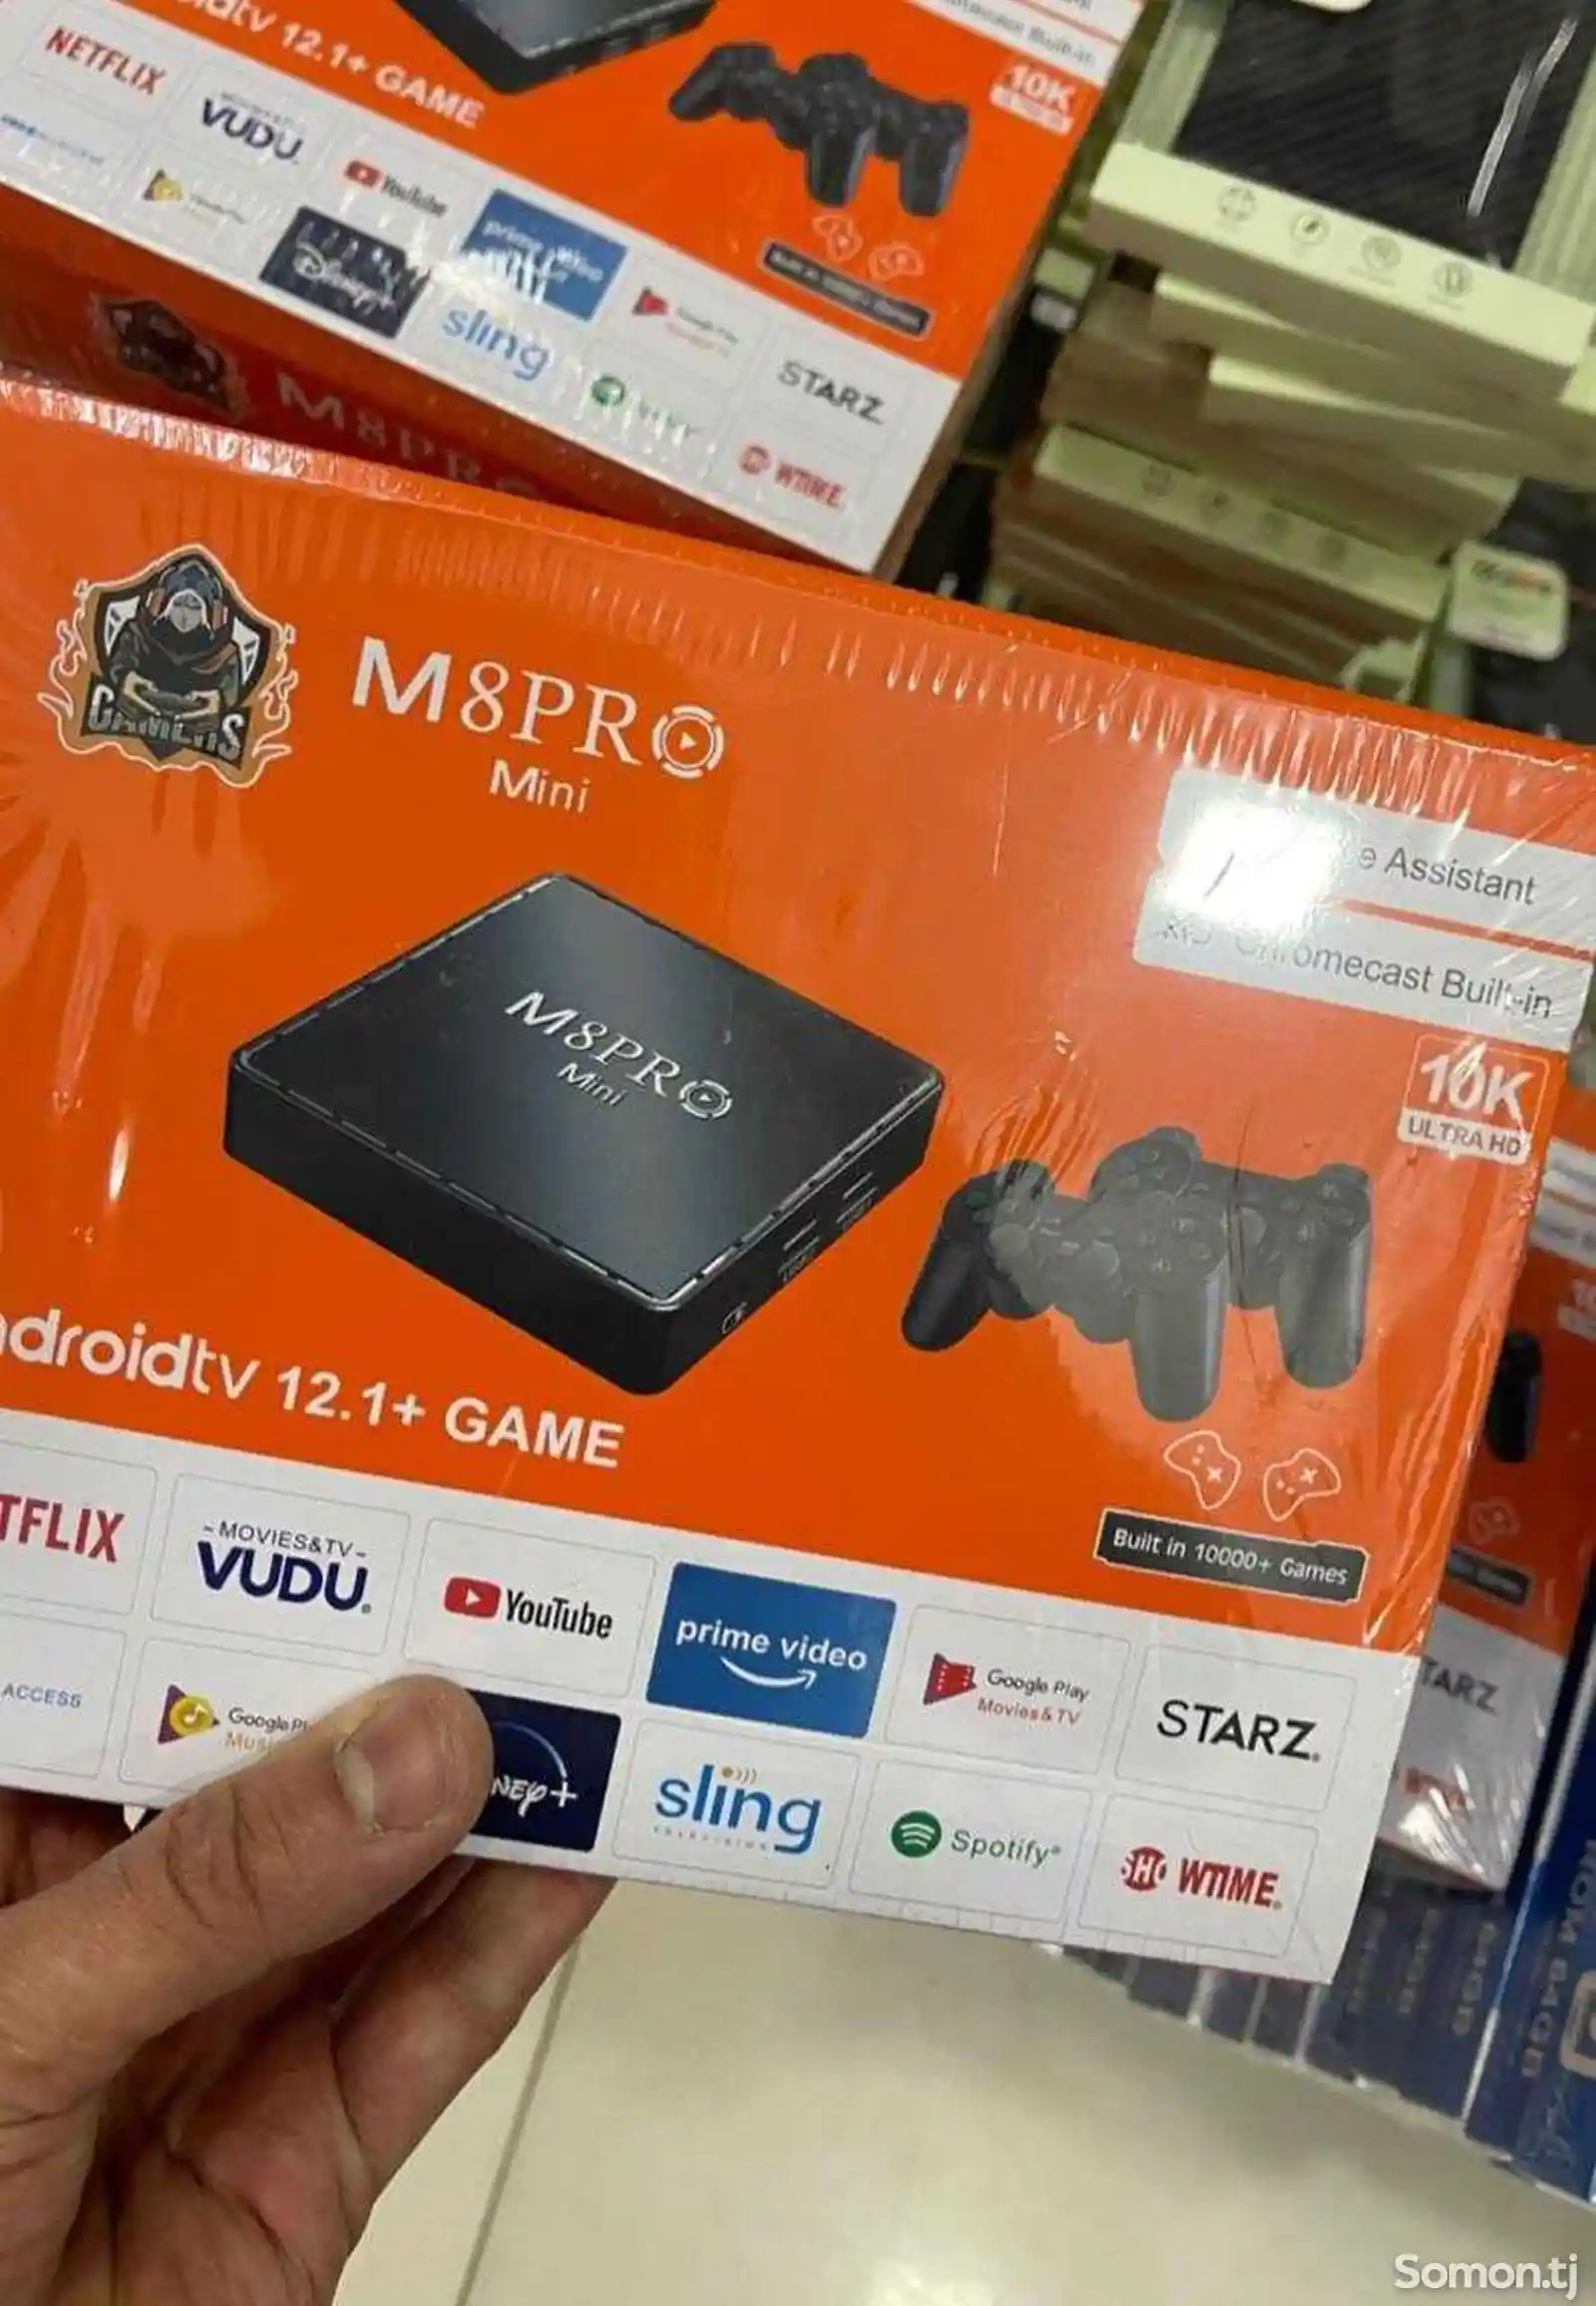 Игровая приставка M8pro mini 10K Ultra HD-1